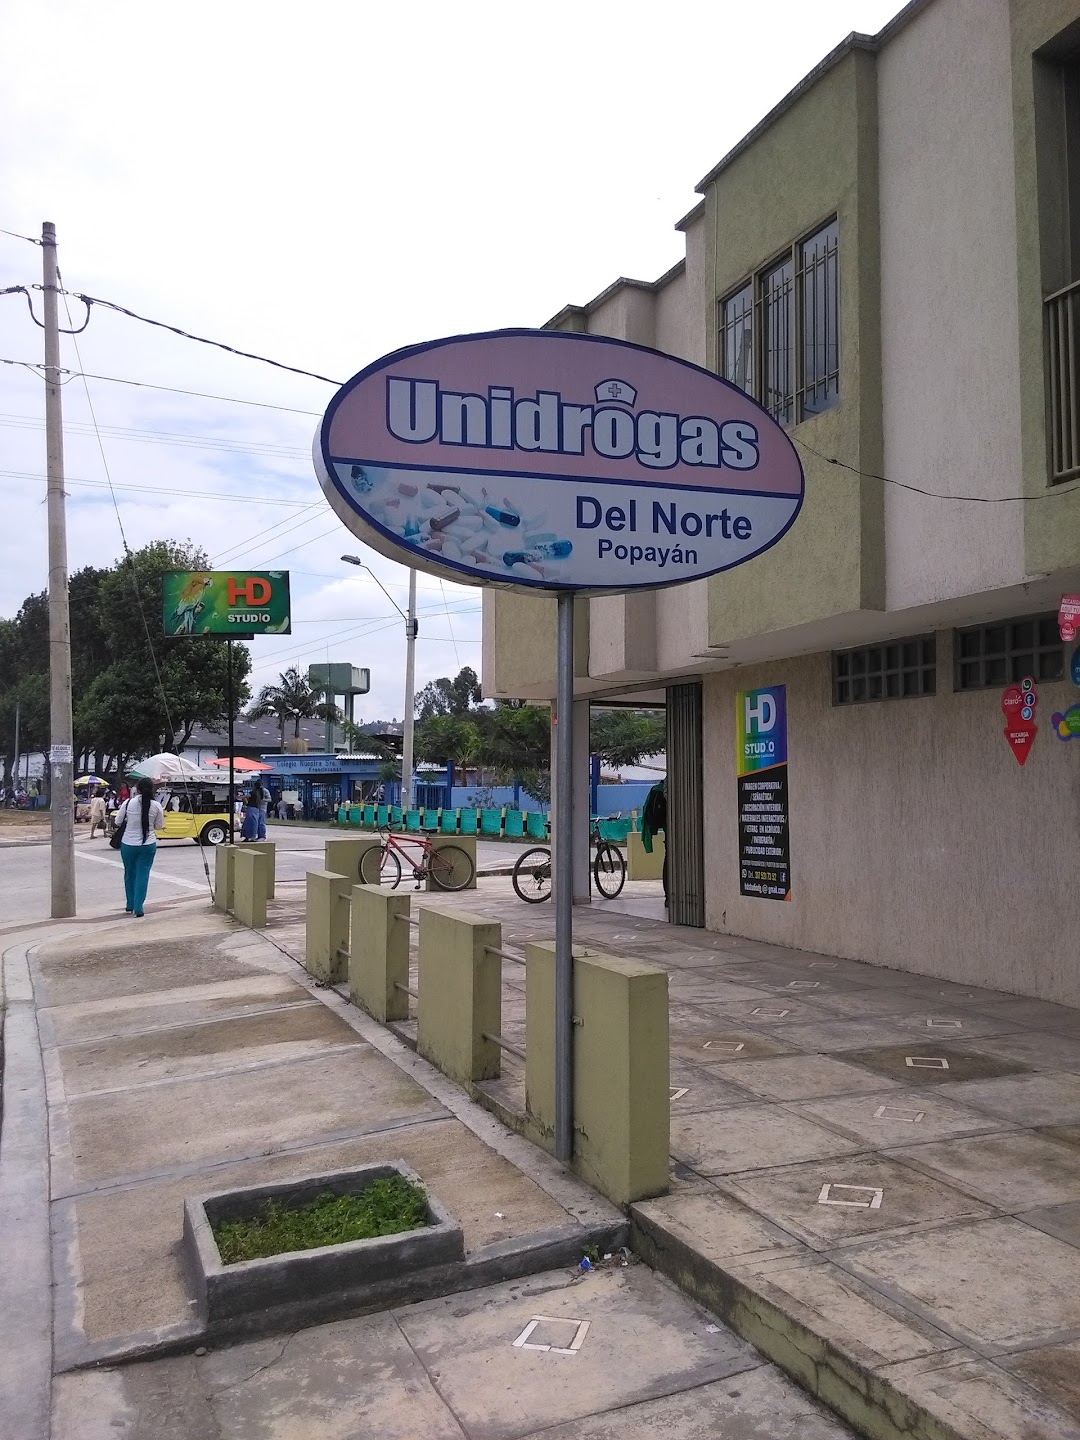 Unidrogas Del Norte Popayan